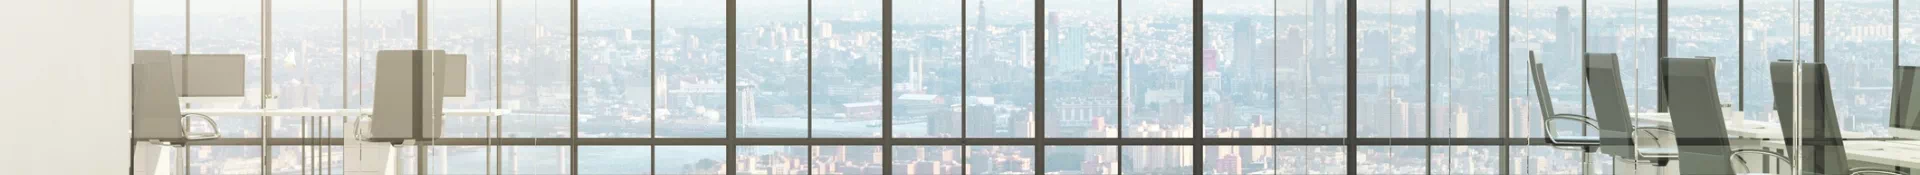 okno z widokiem na miasto